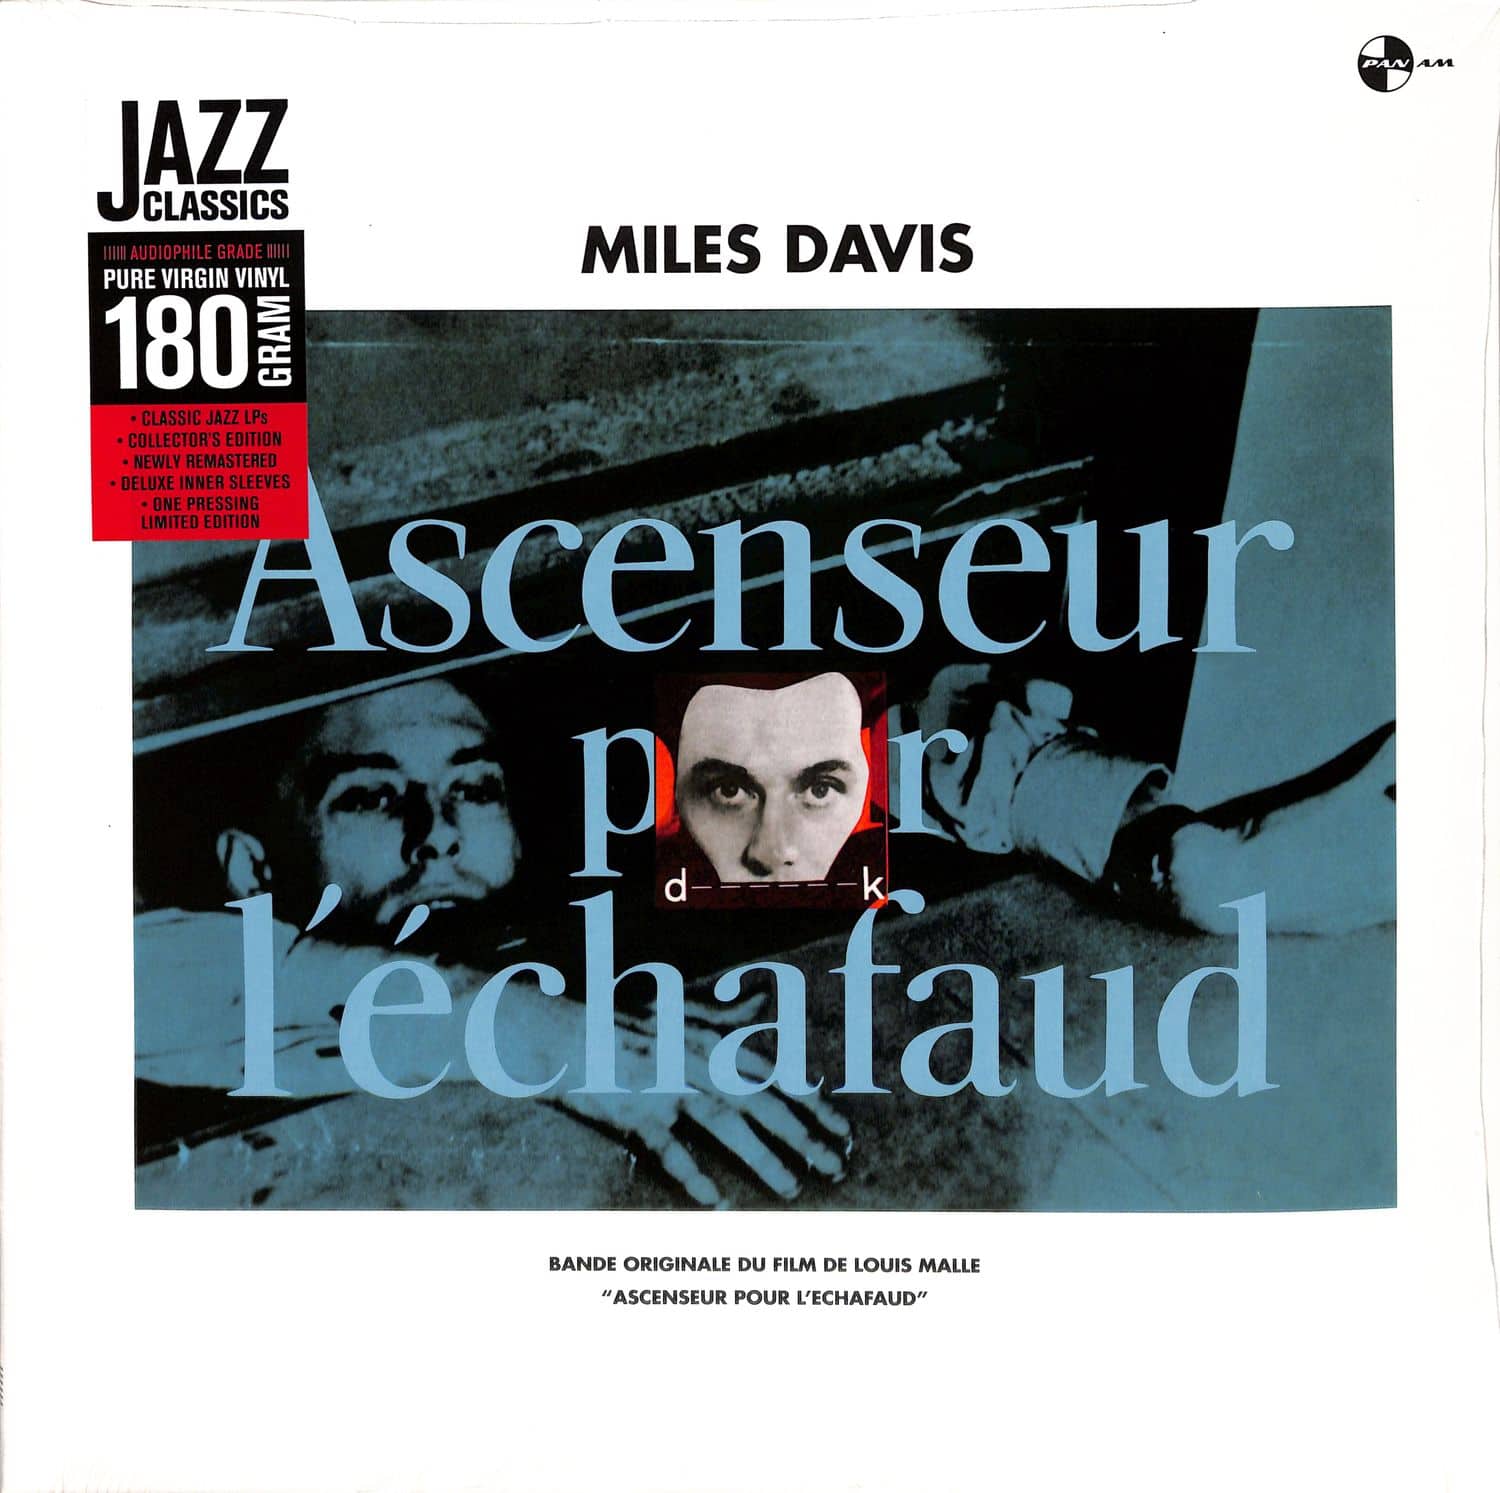 Miles Davis - ASCENSEUR POUR LECHAFAUD 